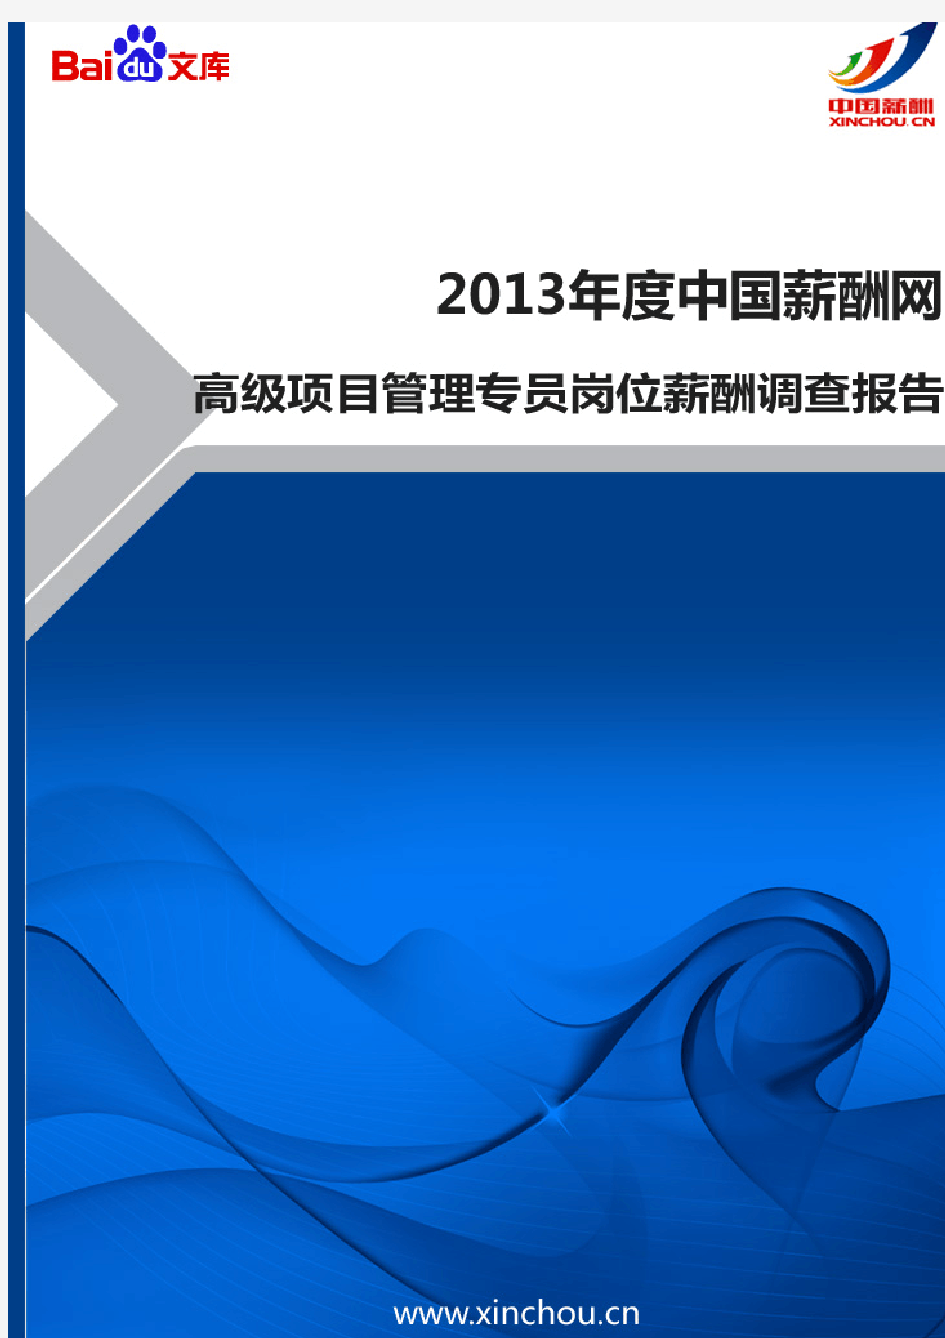 2013年高级项目管理专员岗位薪酬报告